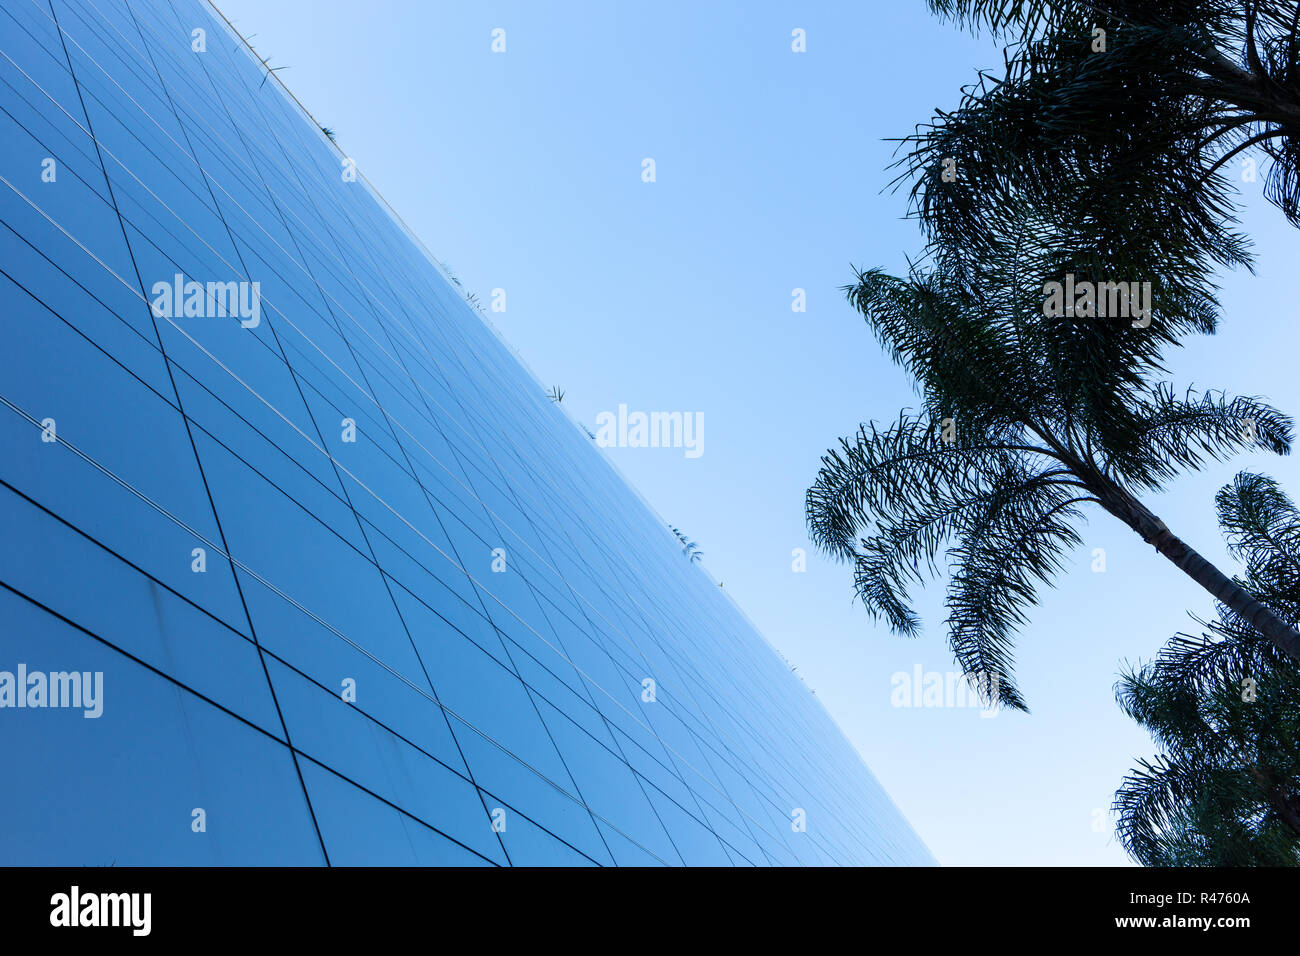 Ángulo de visión baja de una moderna fachada de vidrio con palmeras y el cielo azul de fondo. Foto de stock